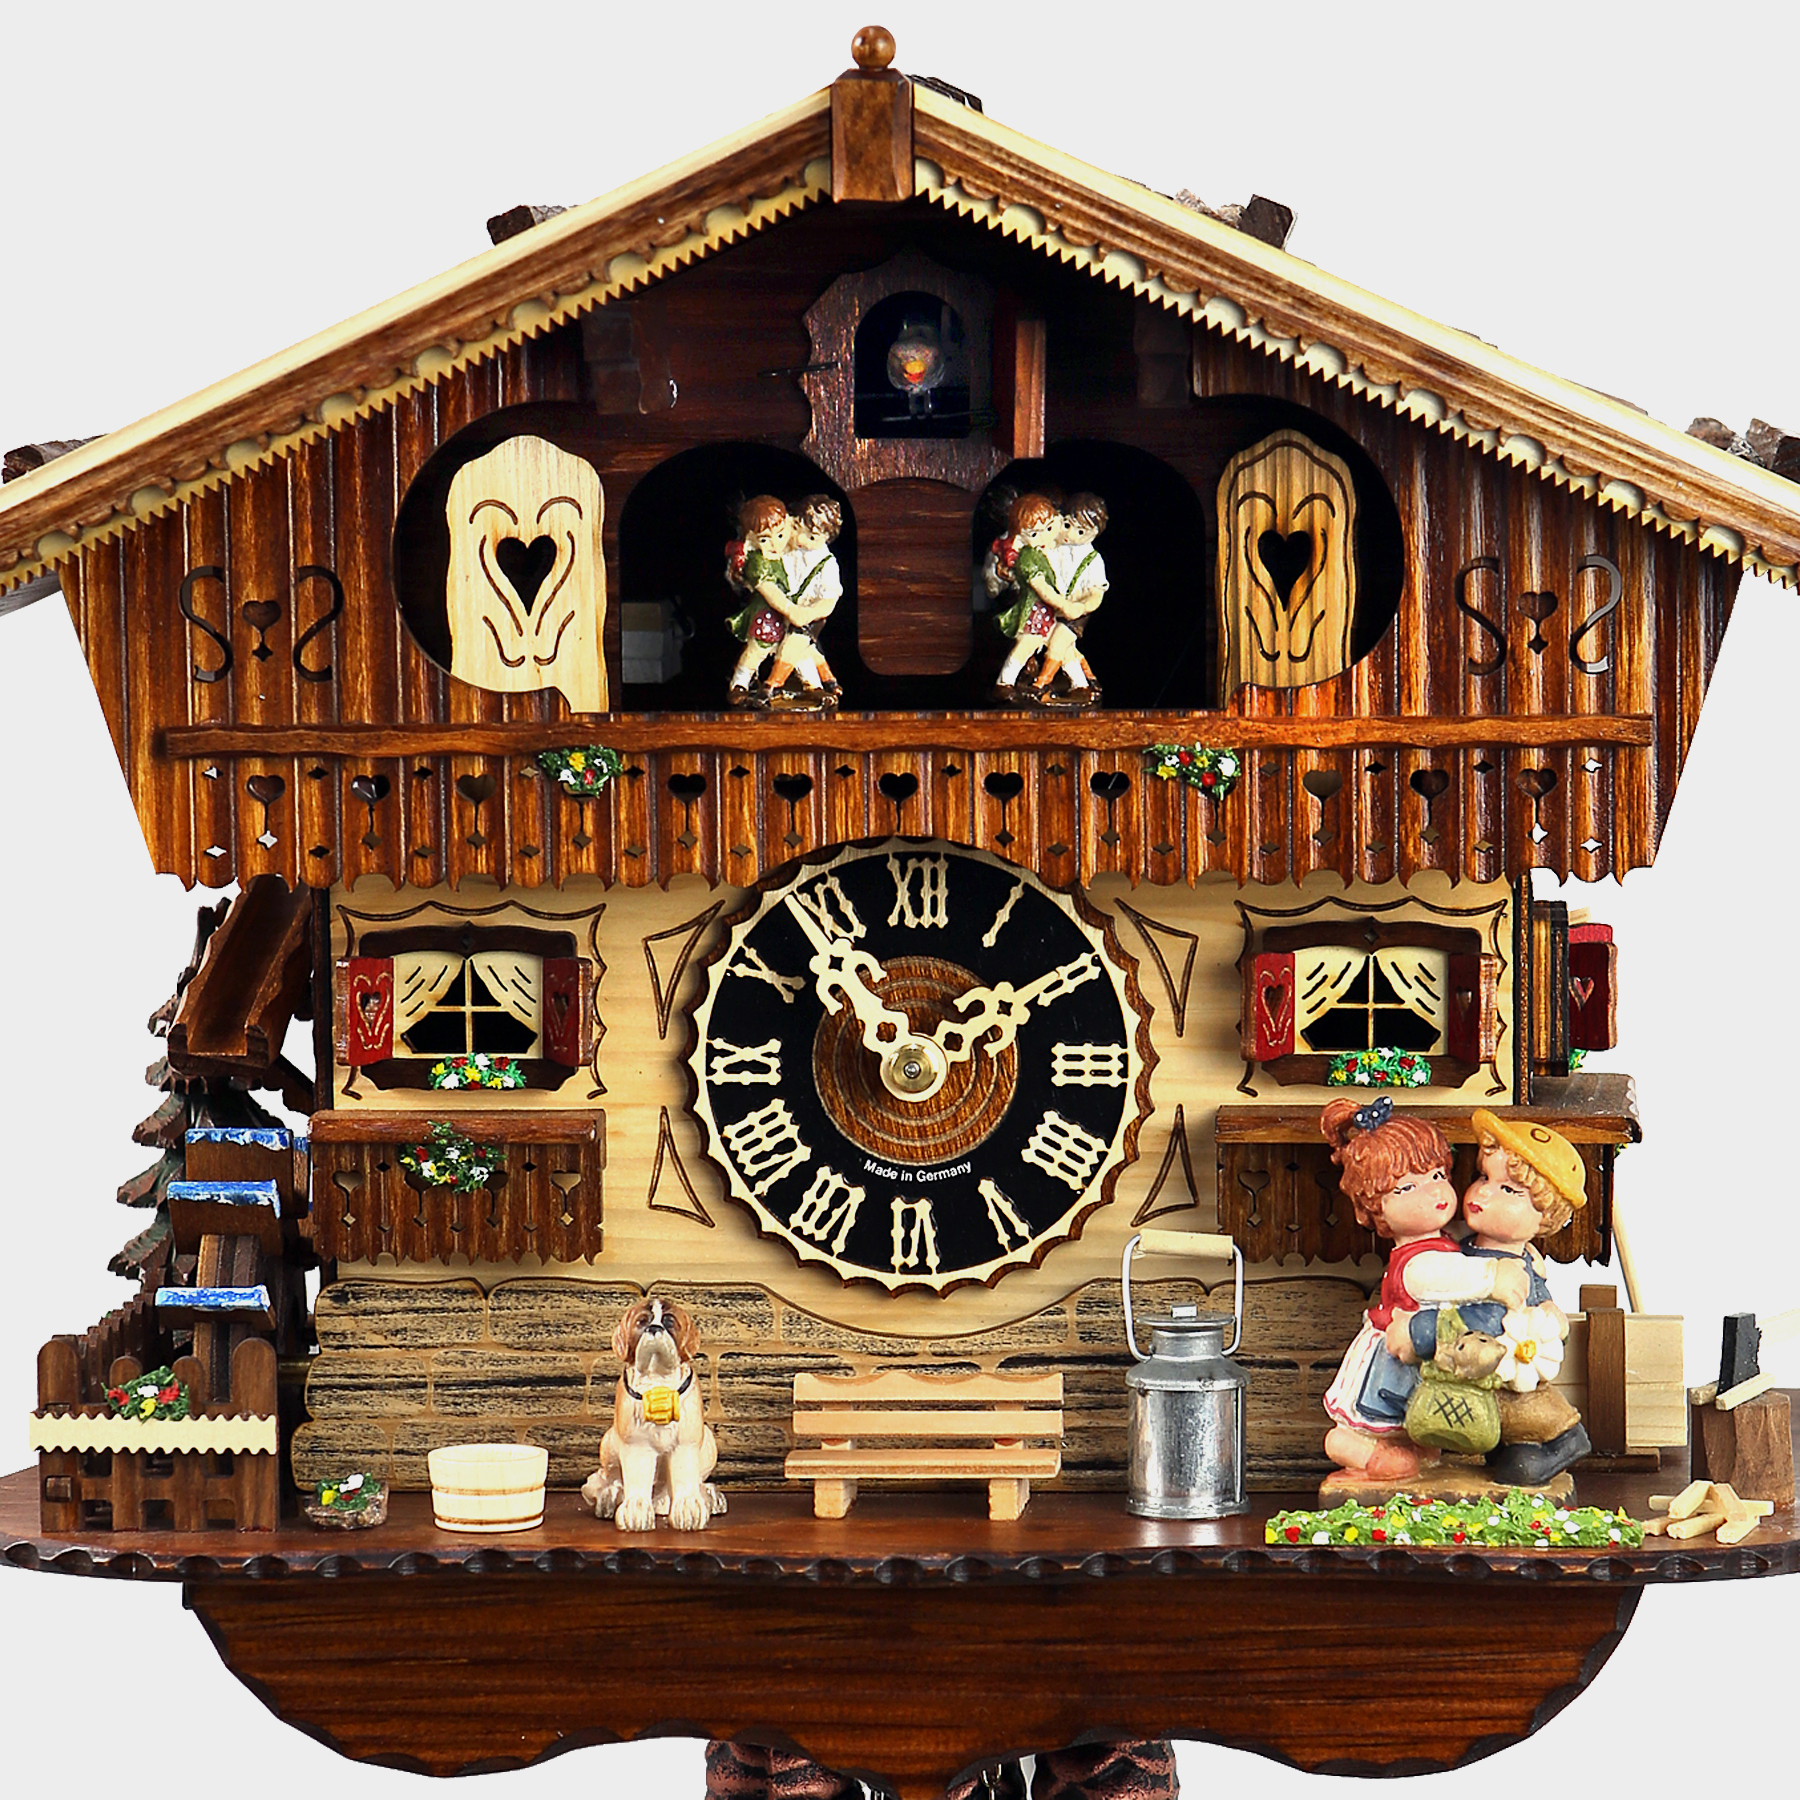 Reloj cuco - Chalet - Kuckucksuhren Shop - Original Kuckucksuhren